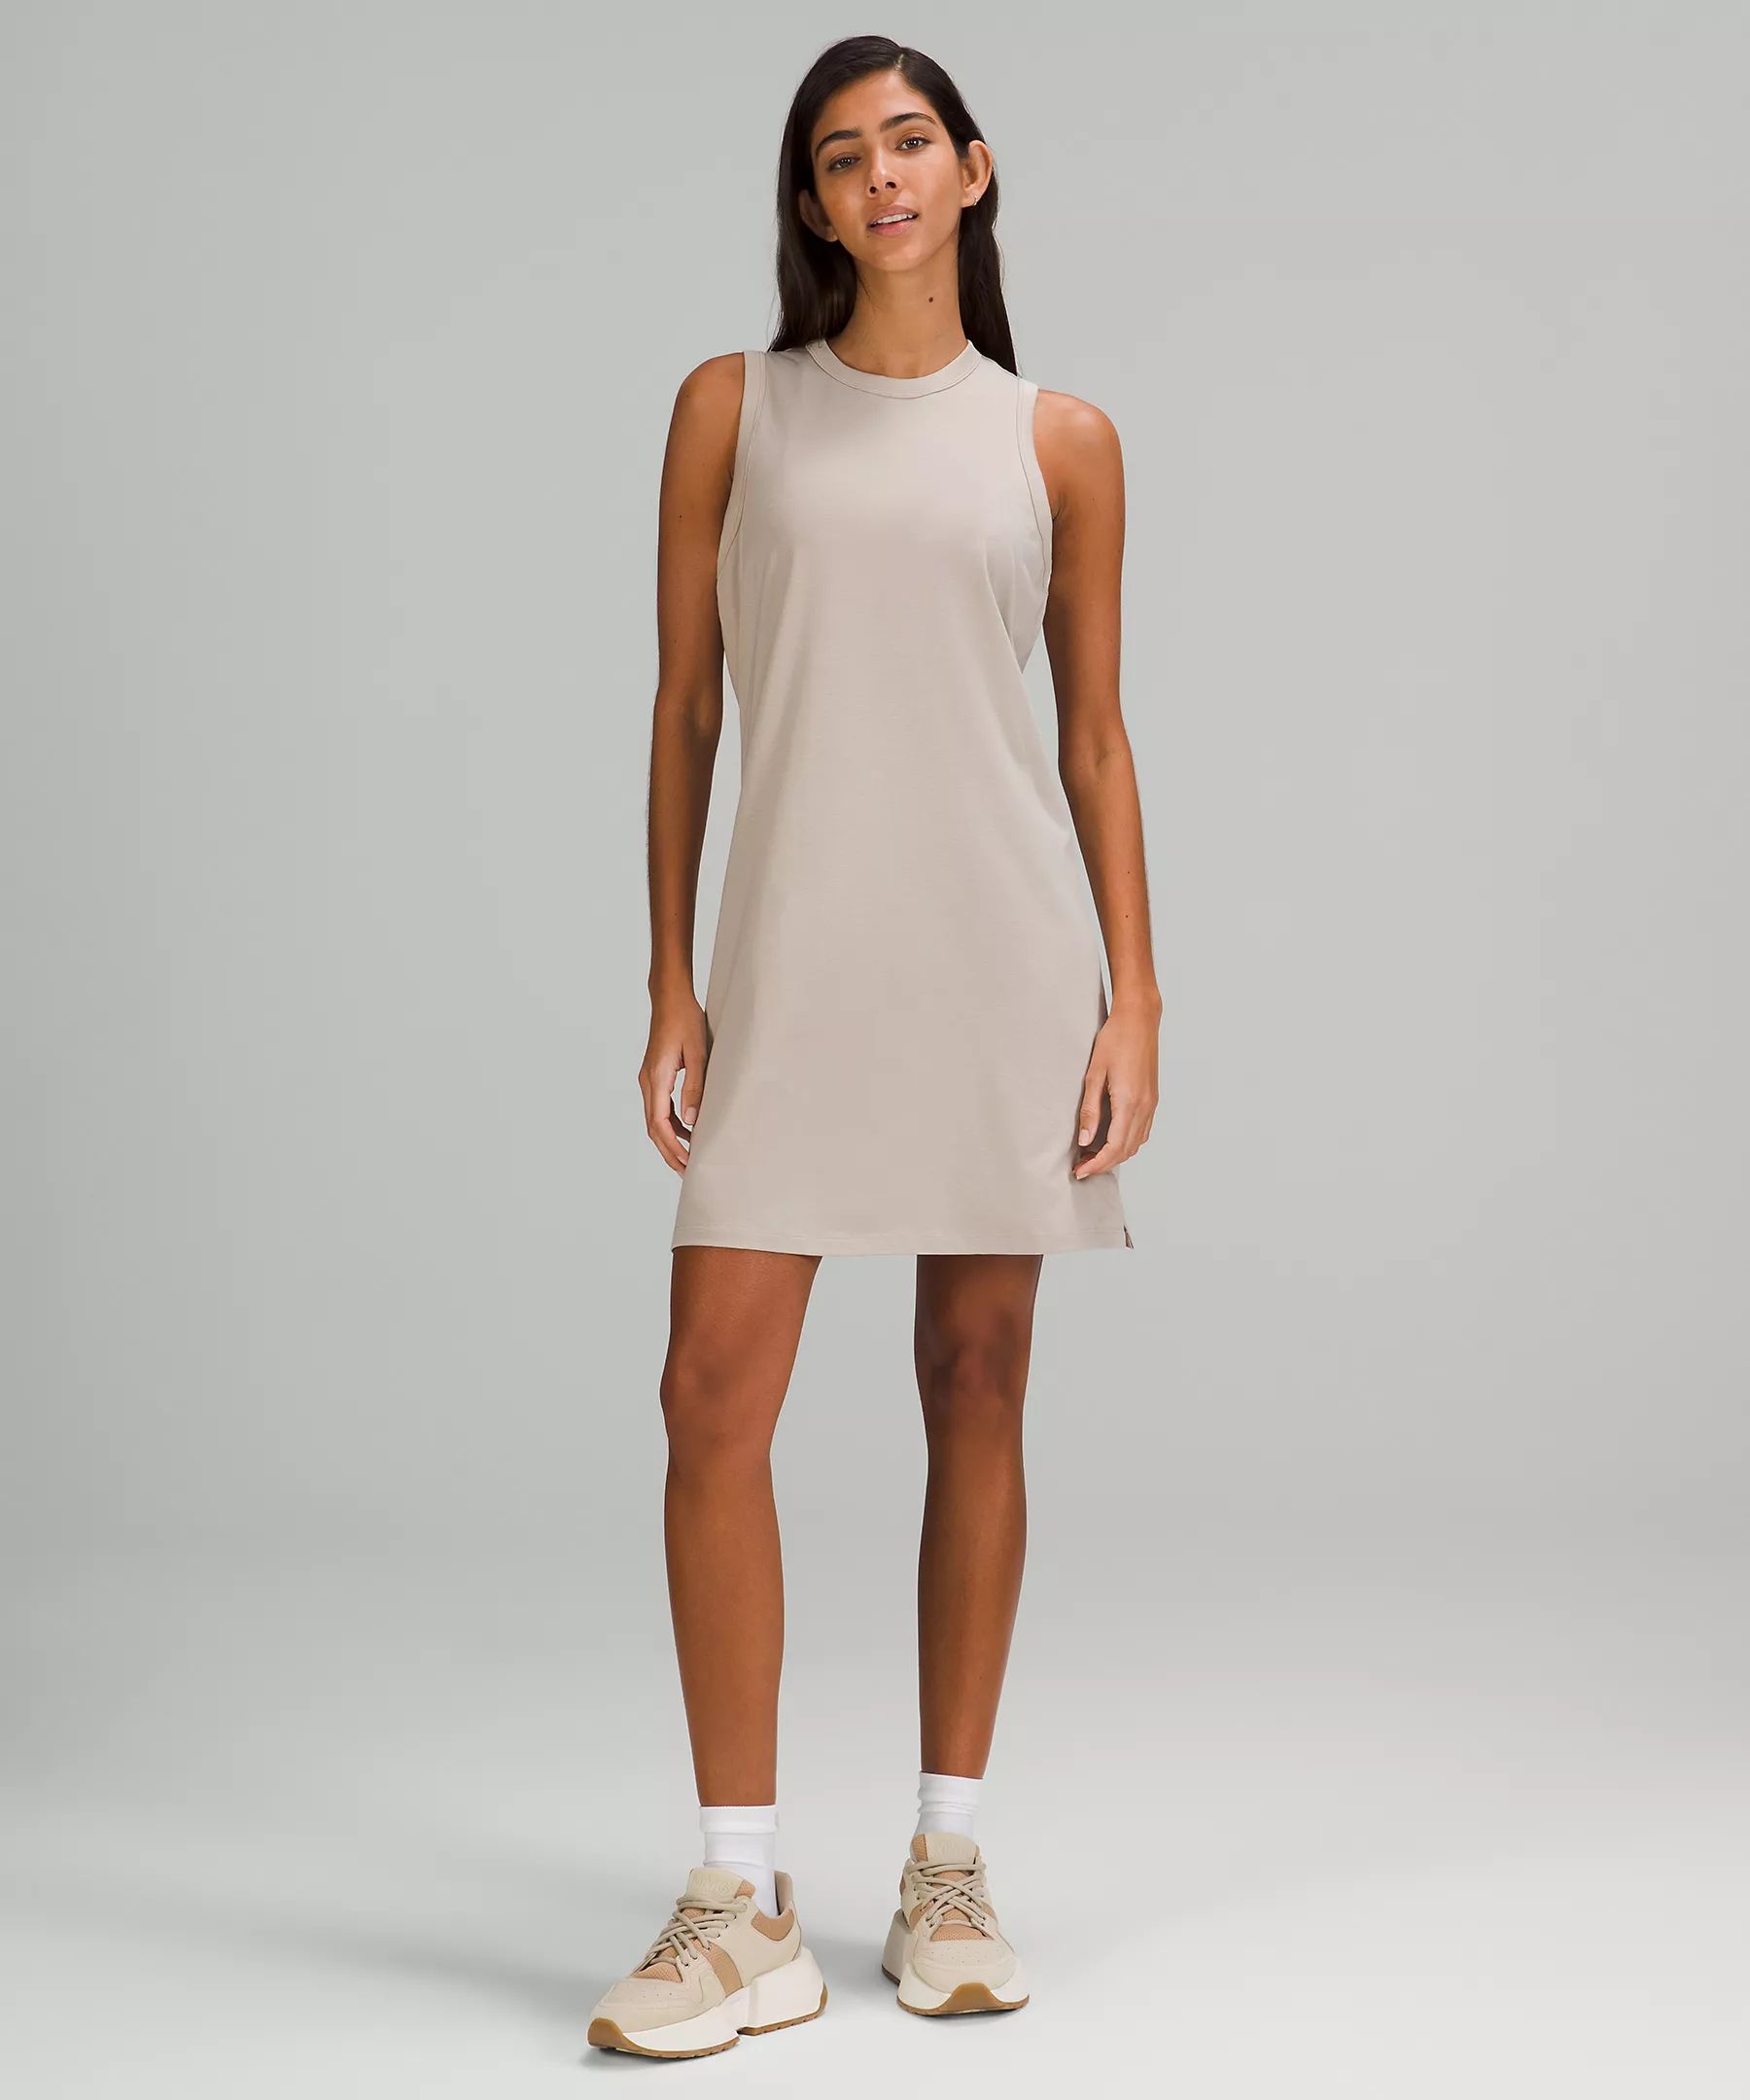 Classic-Fit Cotton-Blend Dress | Lululemon (US)